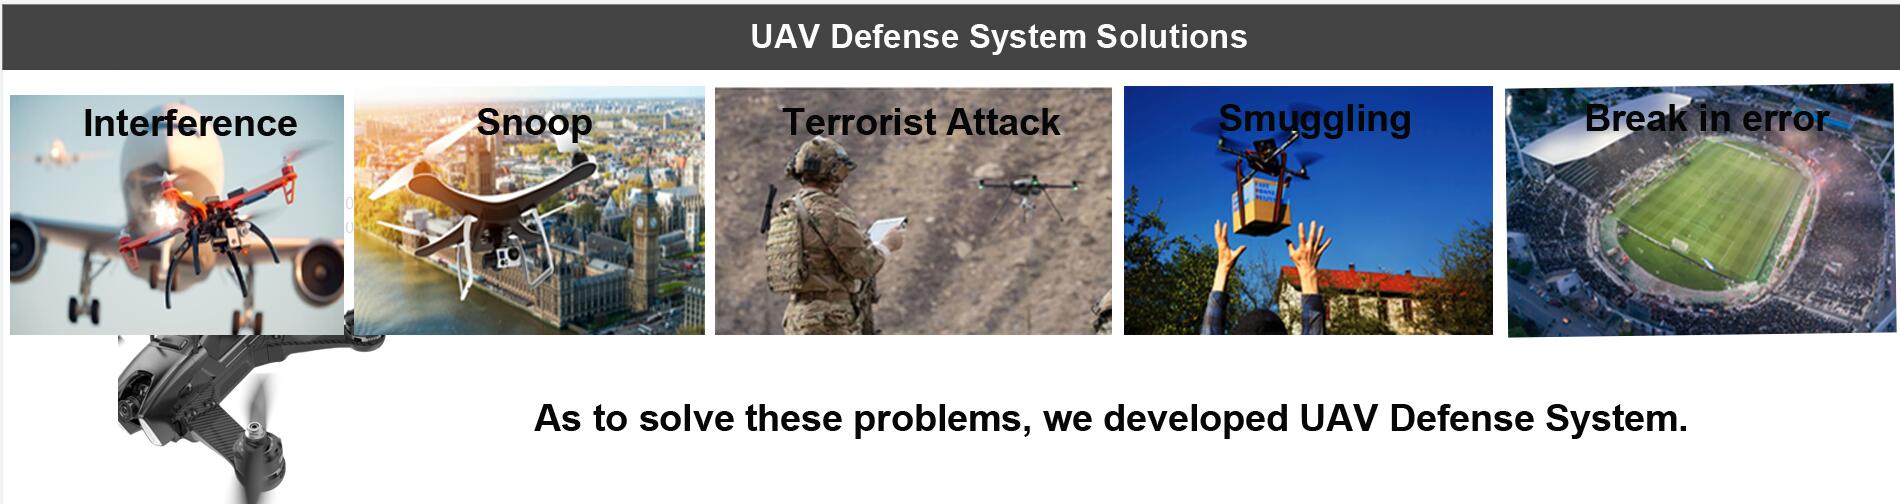 UAV Defense System